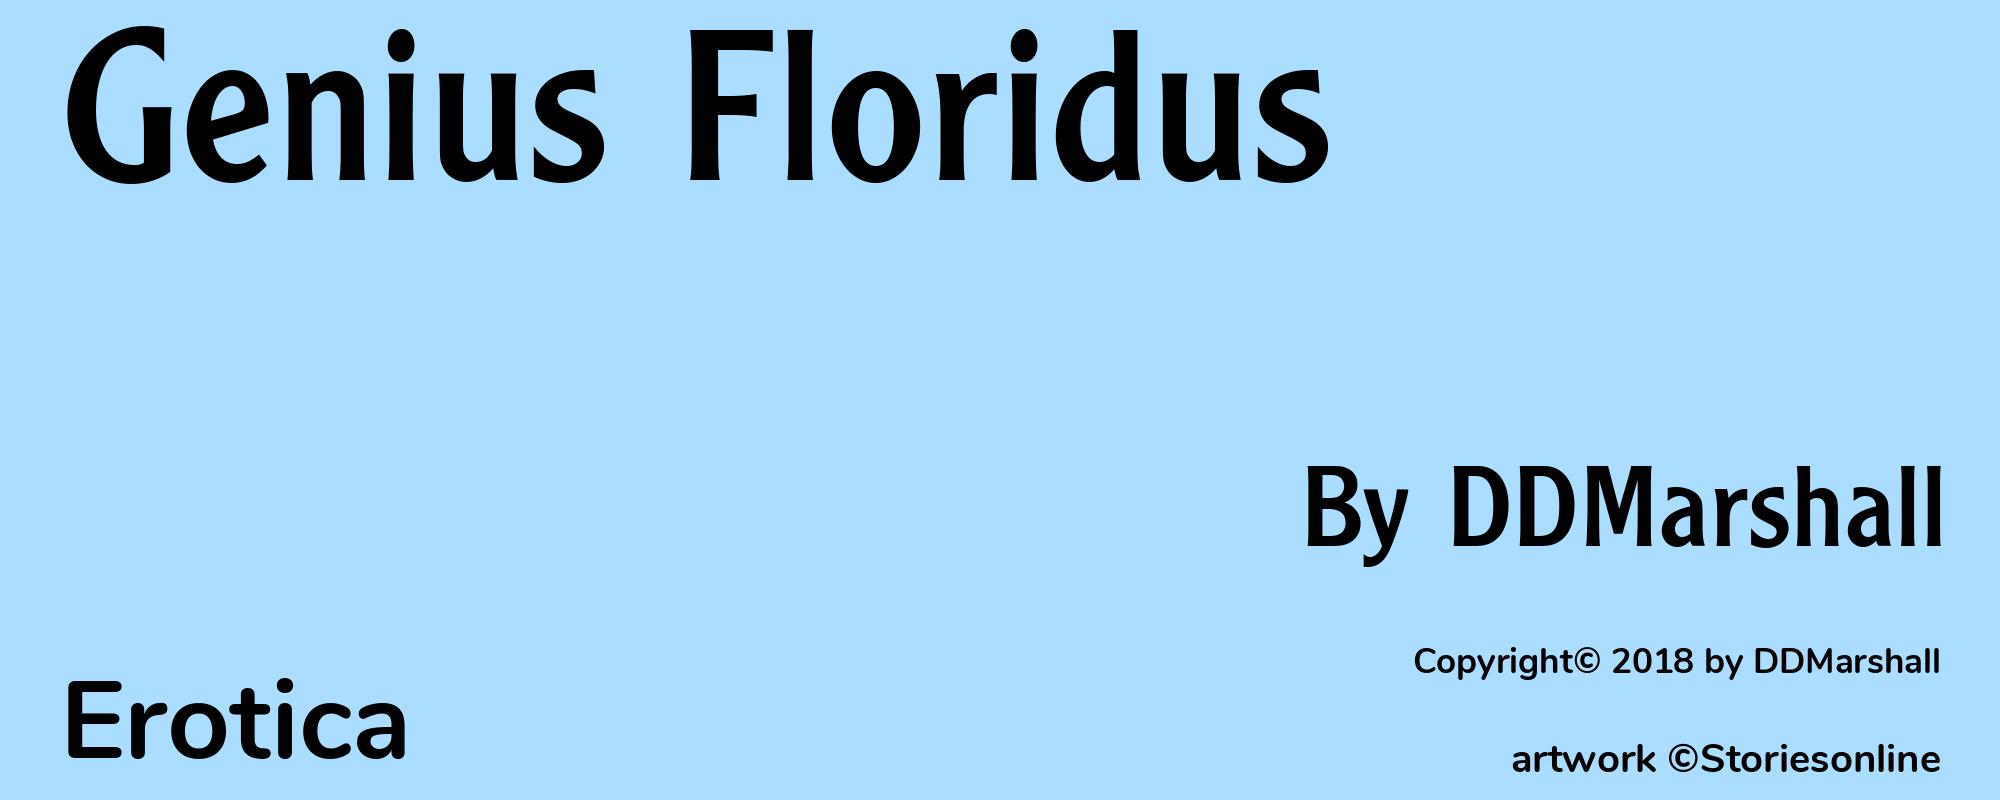 Genius Floridus - Cover